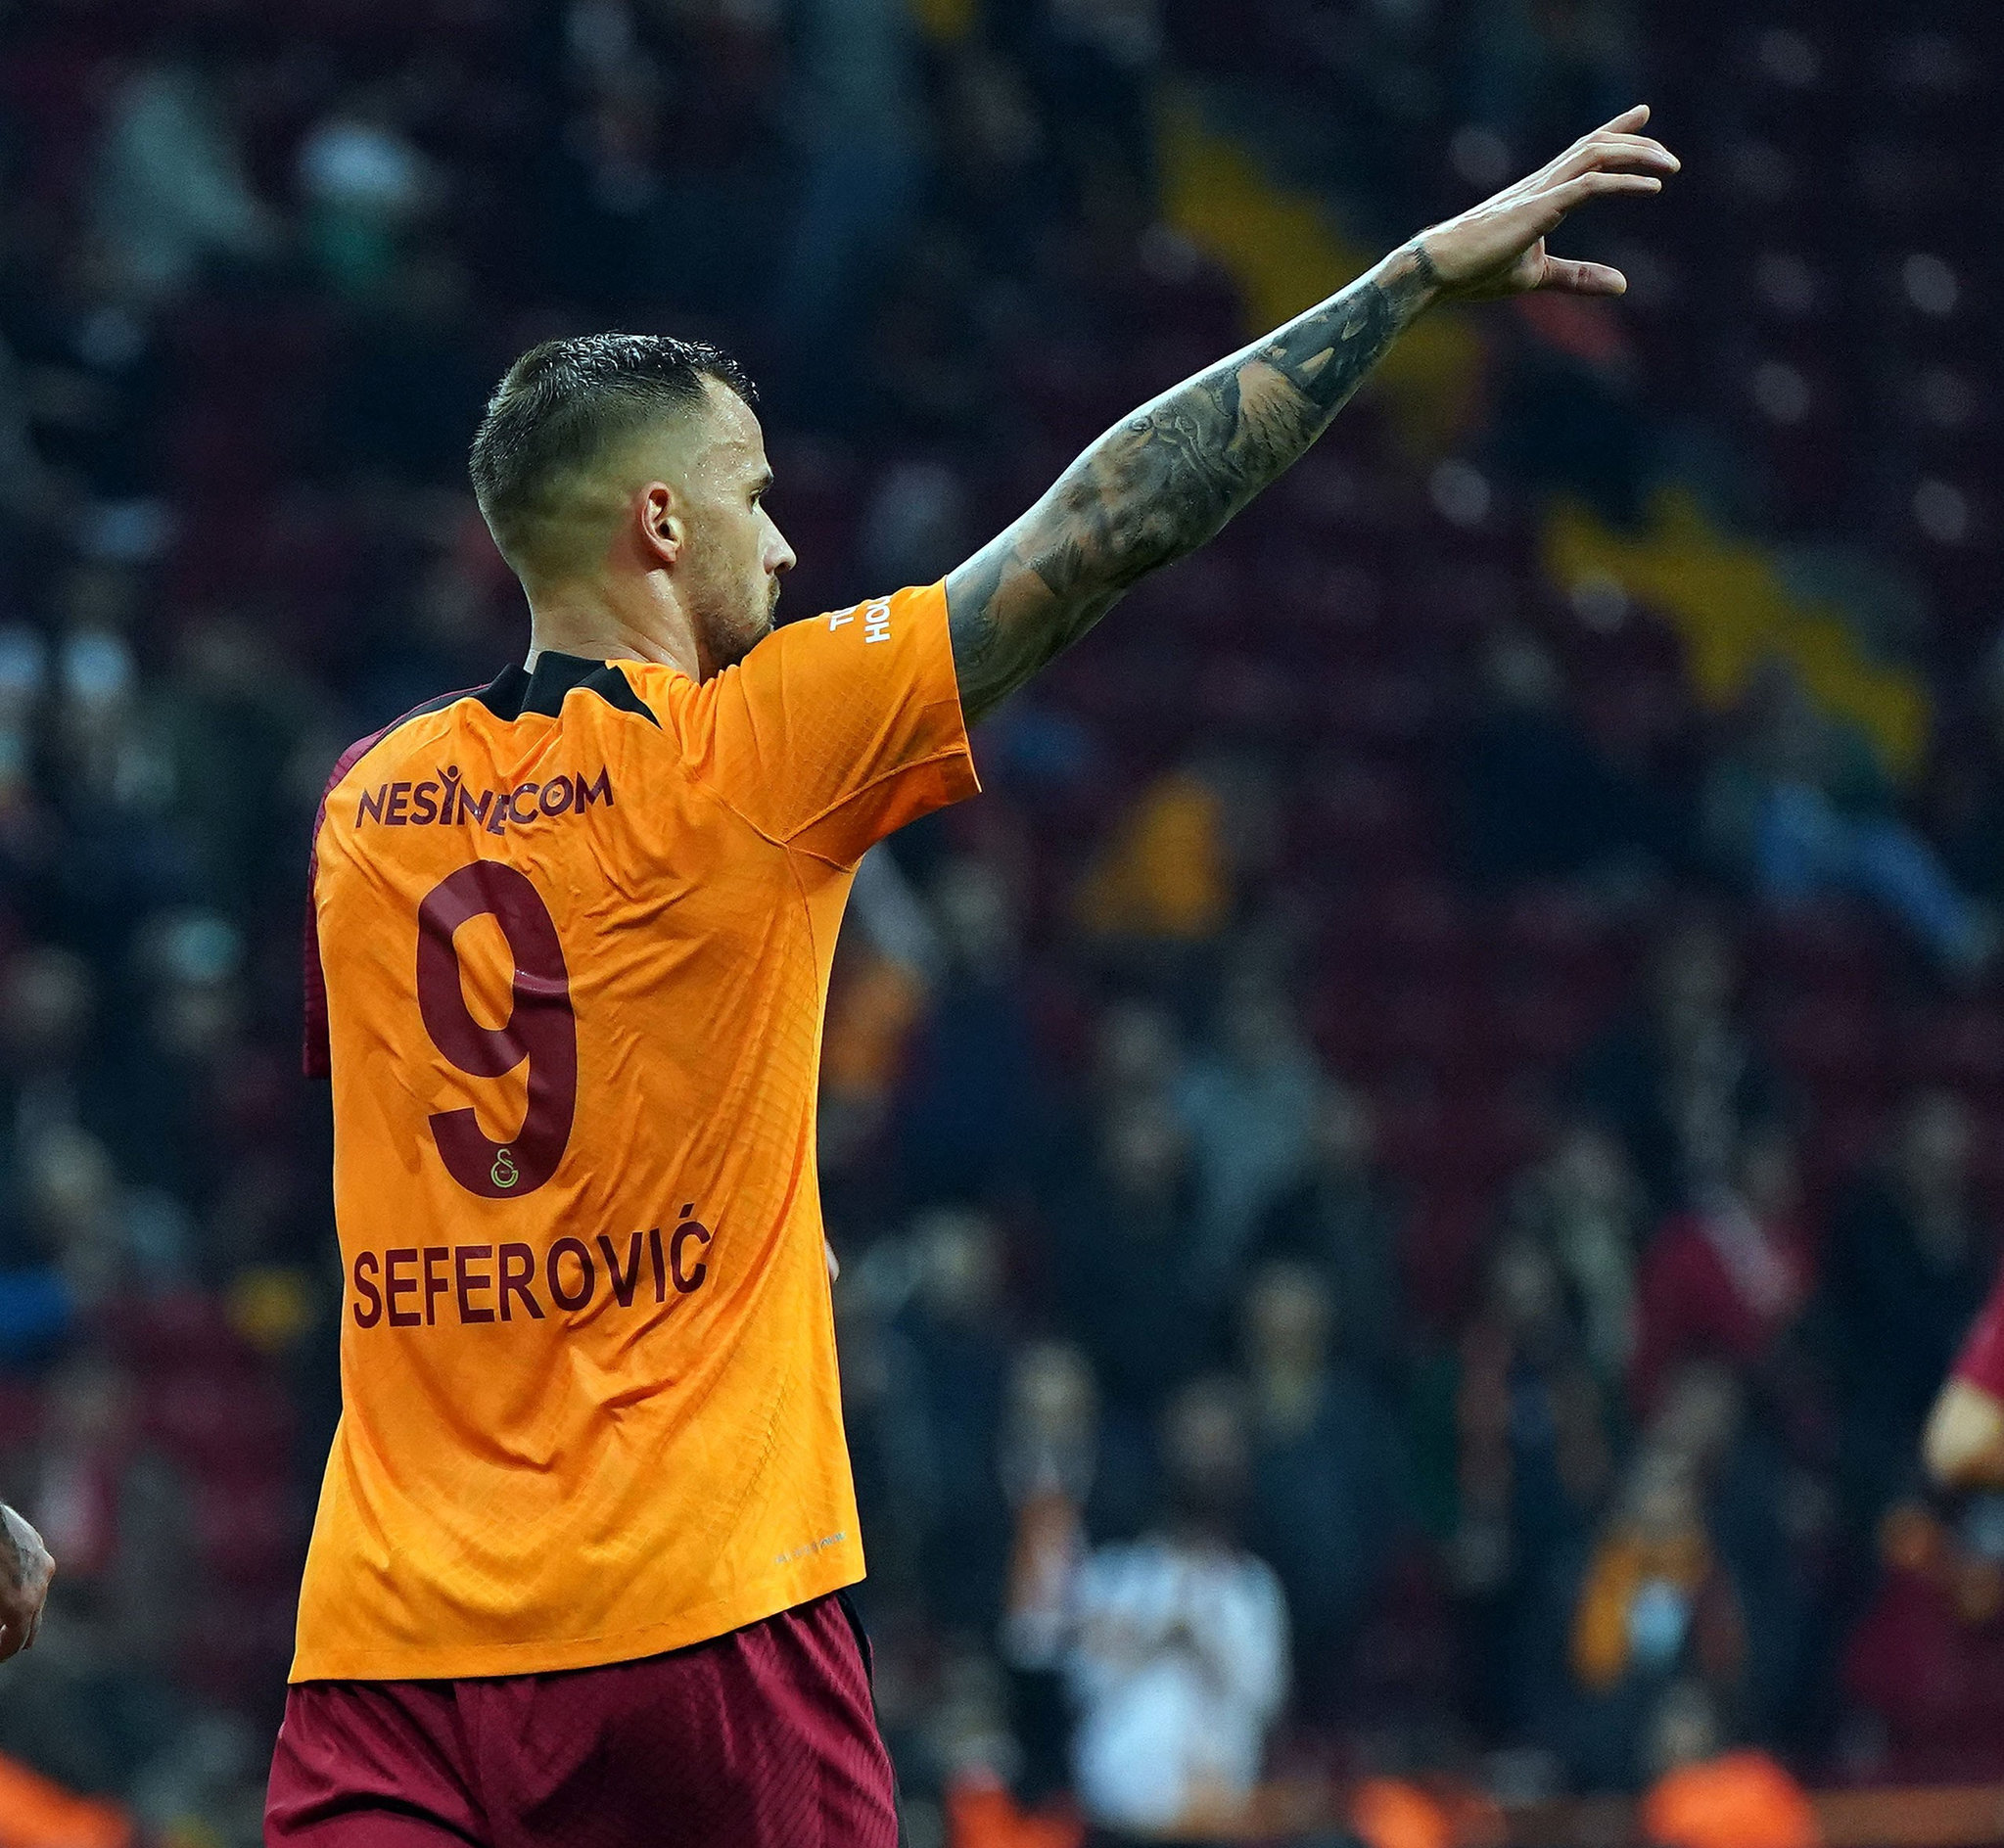 Haris Seferovic'ten transfer açıklaması! Galatasaray'dan ayrılacak mı? - 07/12/2022